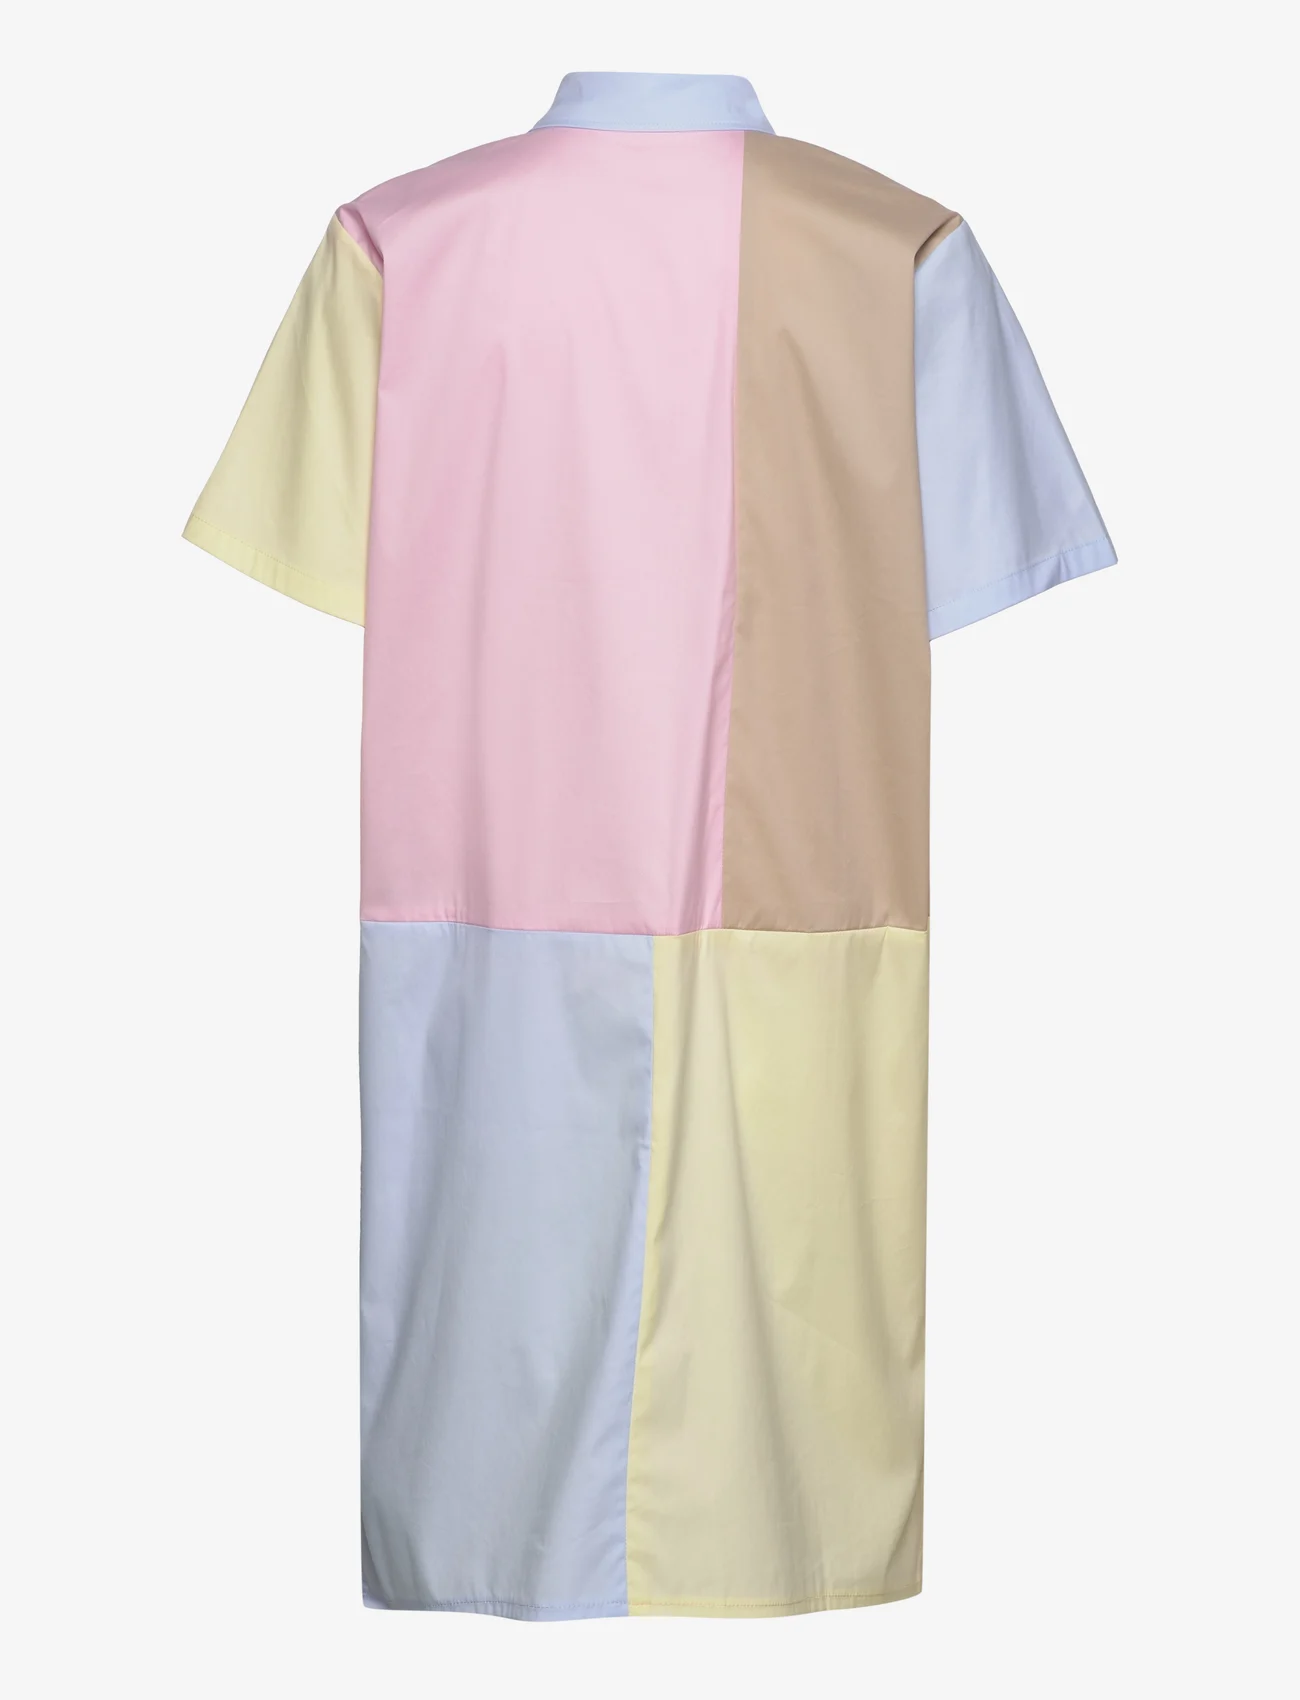 Naja Lauf - DORTHEA DRESS - hemdkleider - rose-blue-yellow-beige - 1